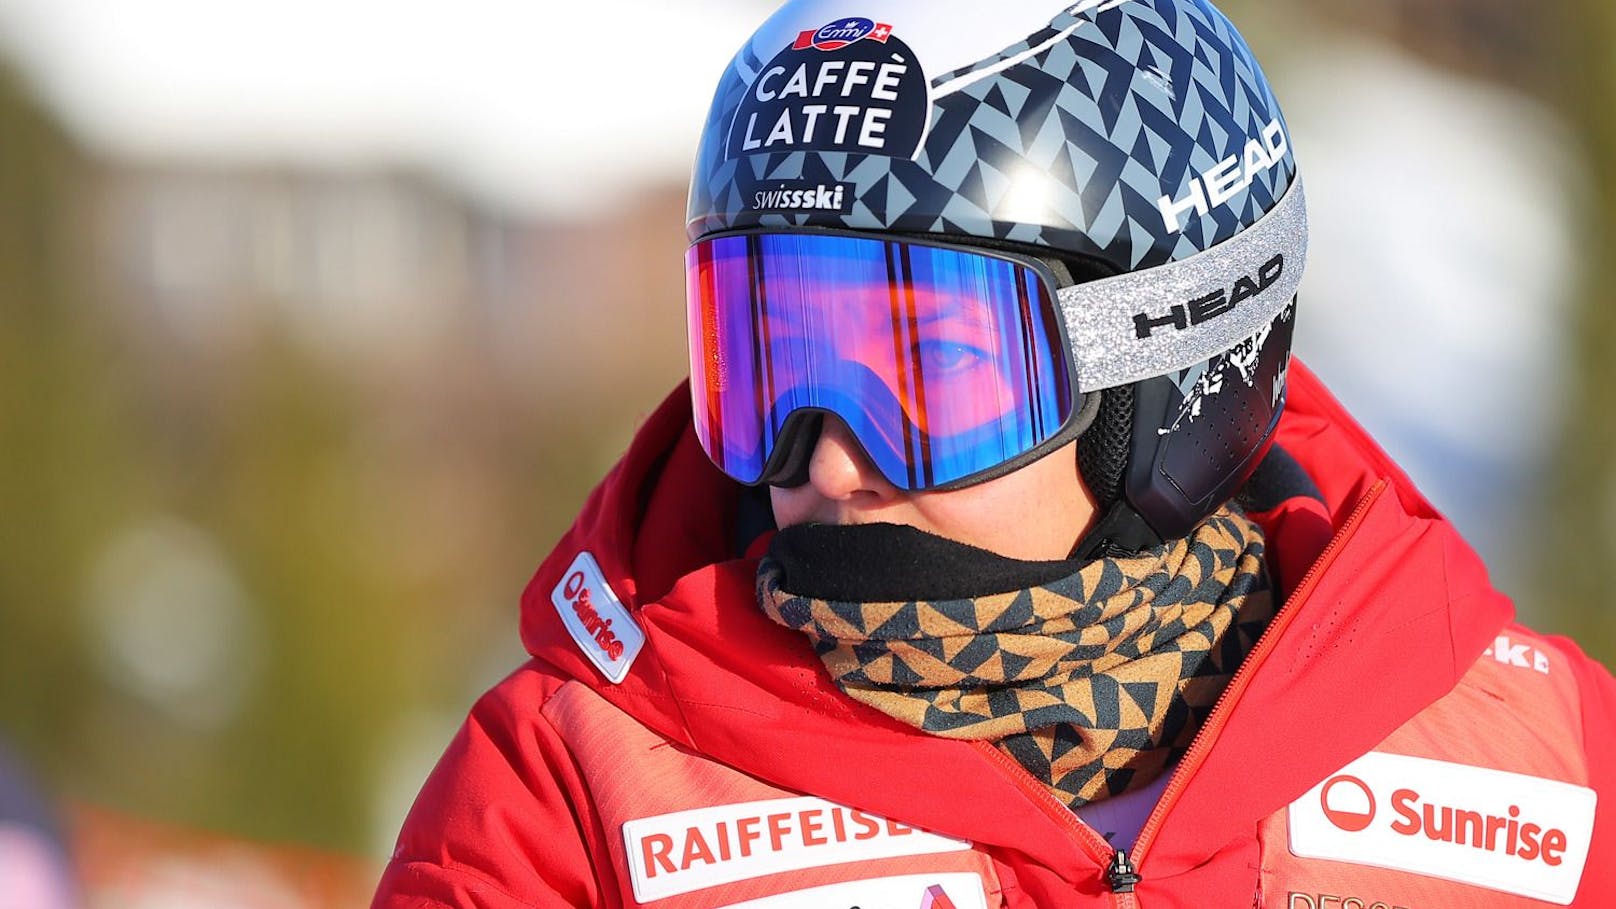 "Ski verbogen!" Neue Details zu Sturz von Weltcup-Star